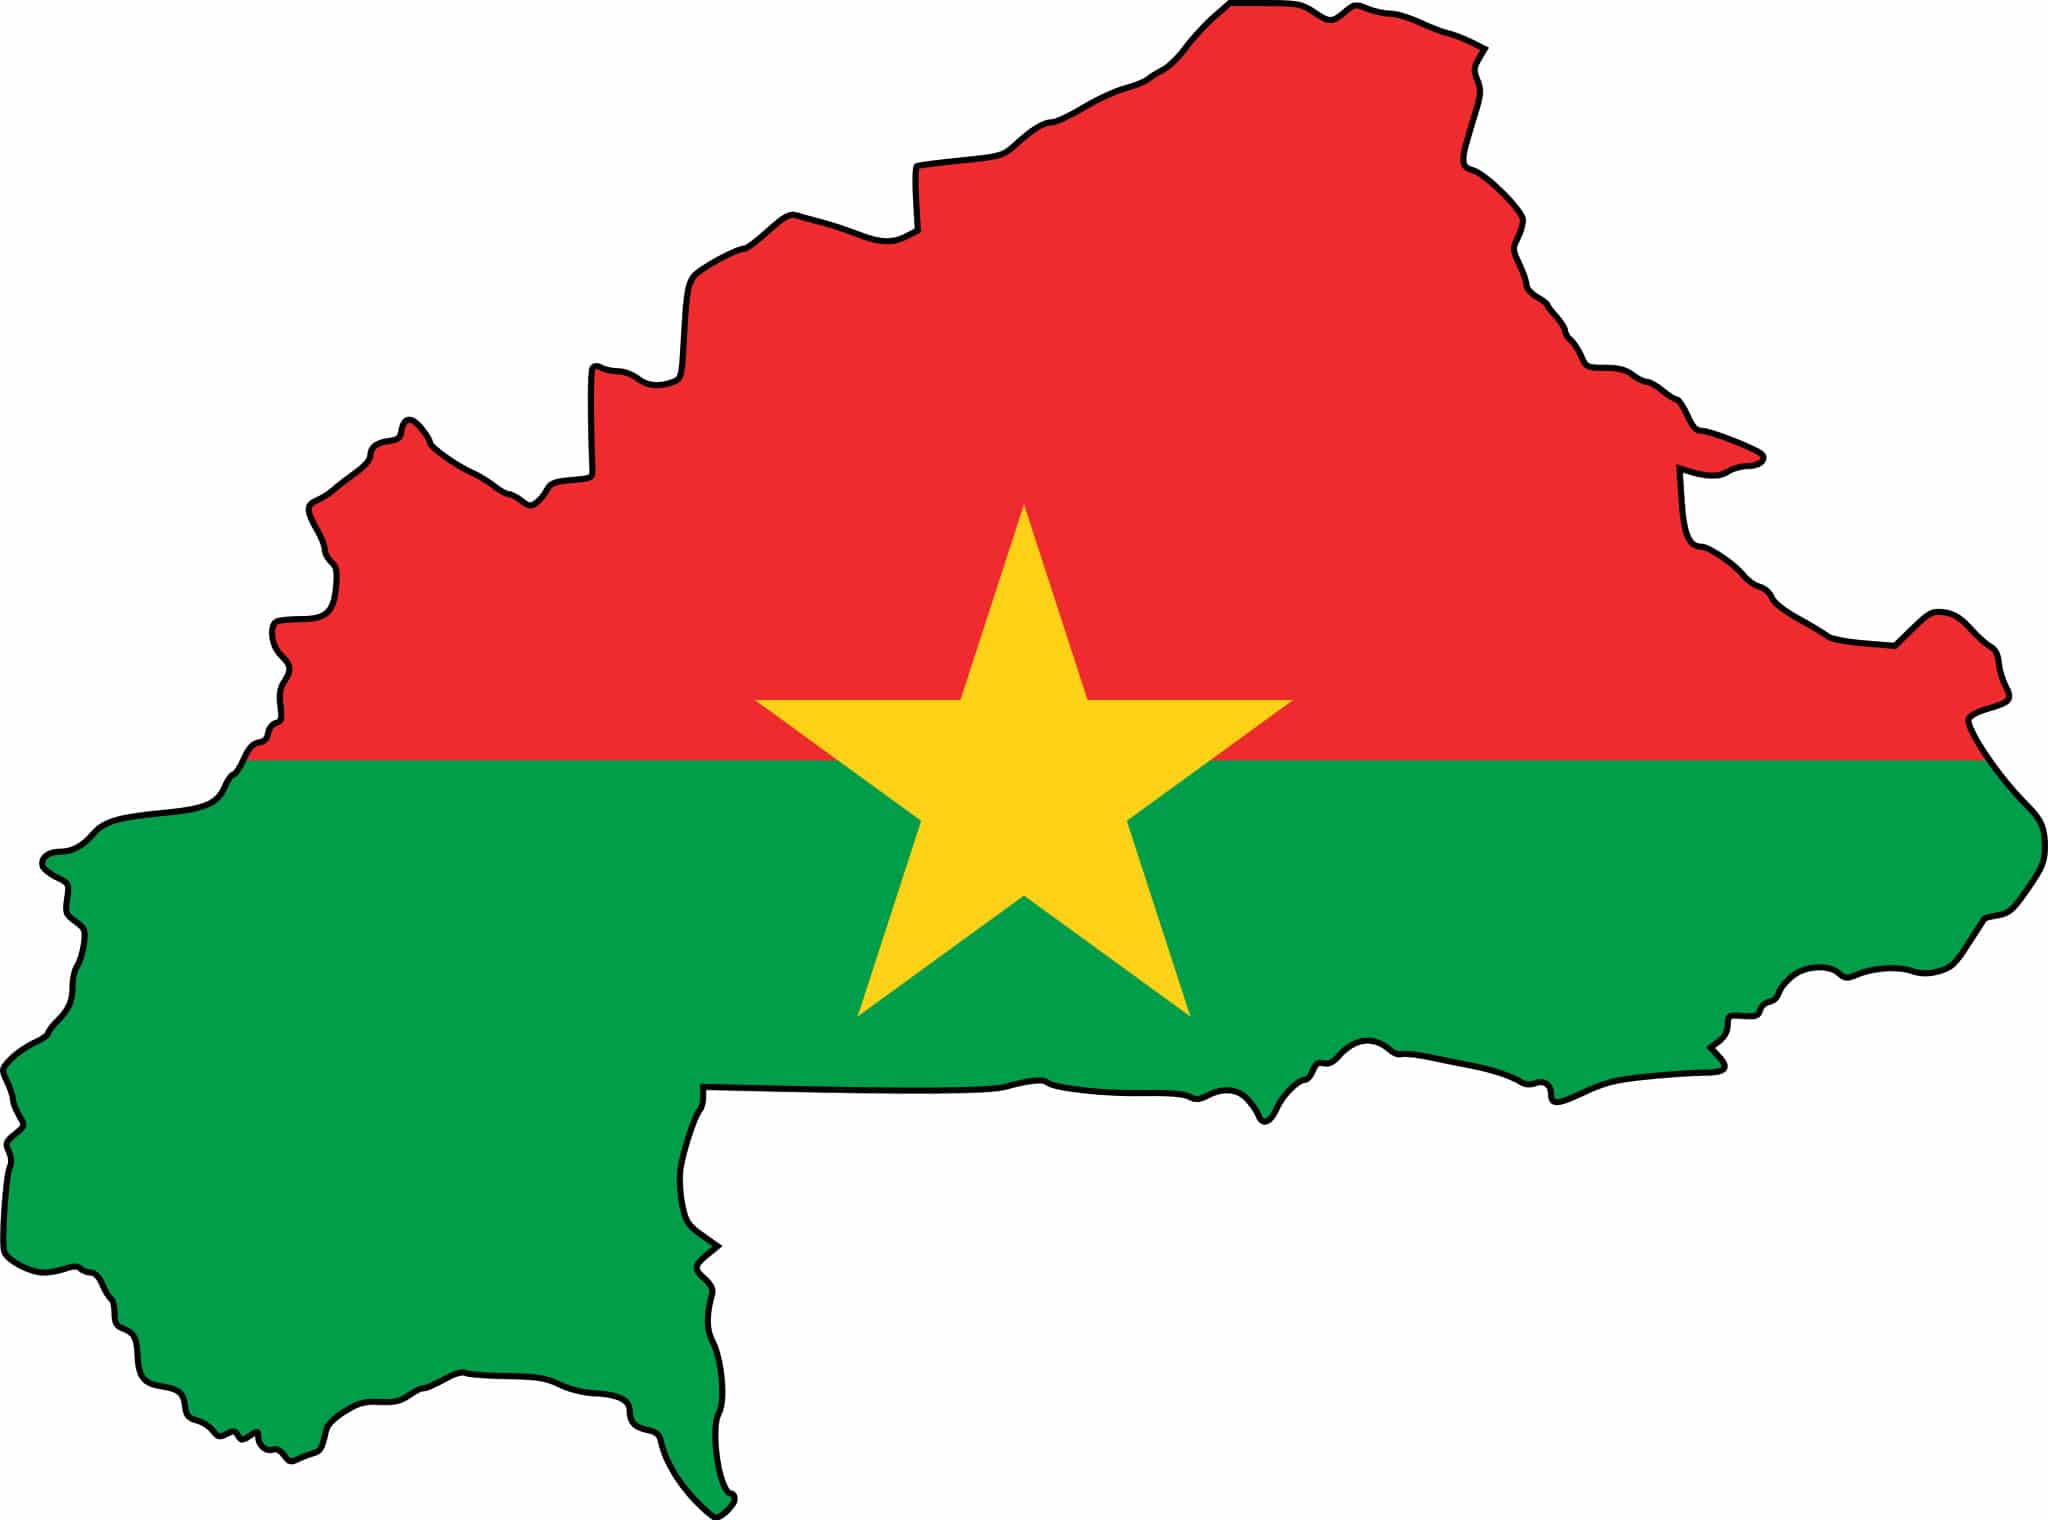 Crises humanitaires négligées dans le monde : Le Burkina Faso en tête de liste, selon le Conseil norvégien pour les réfugiés